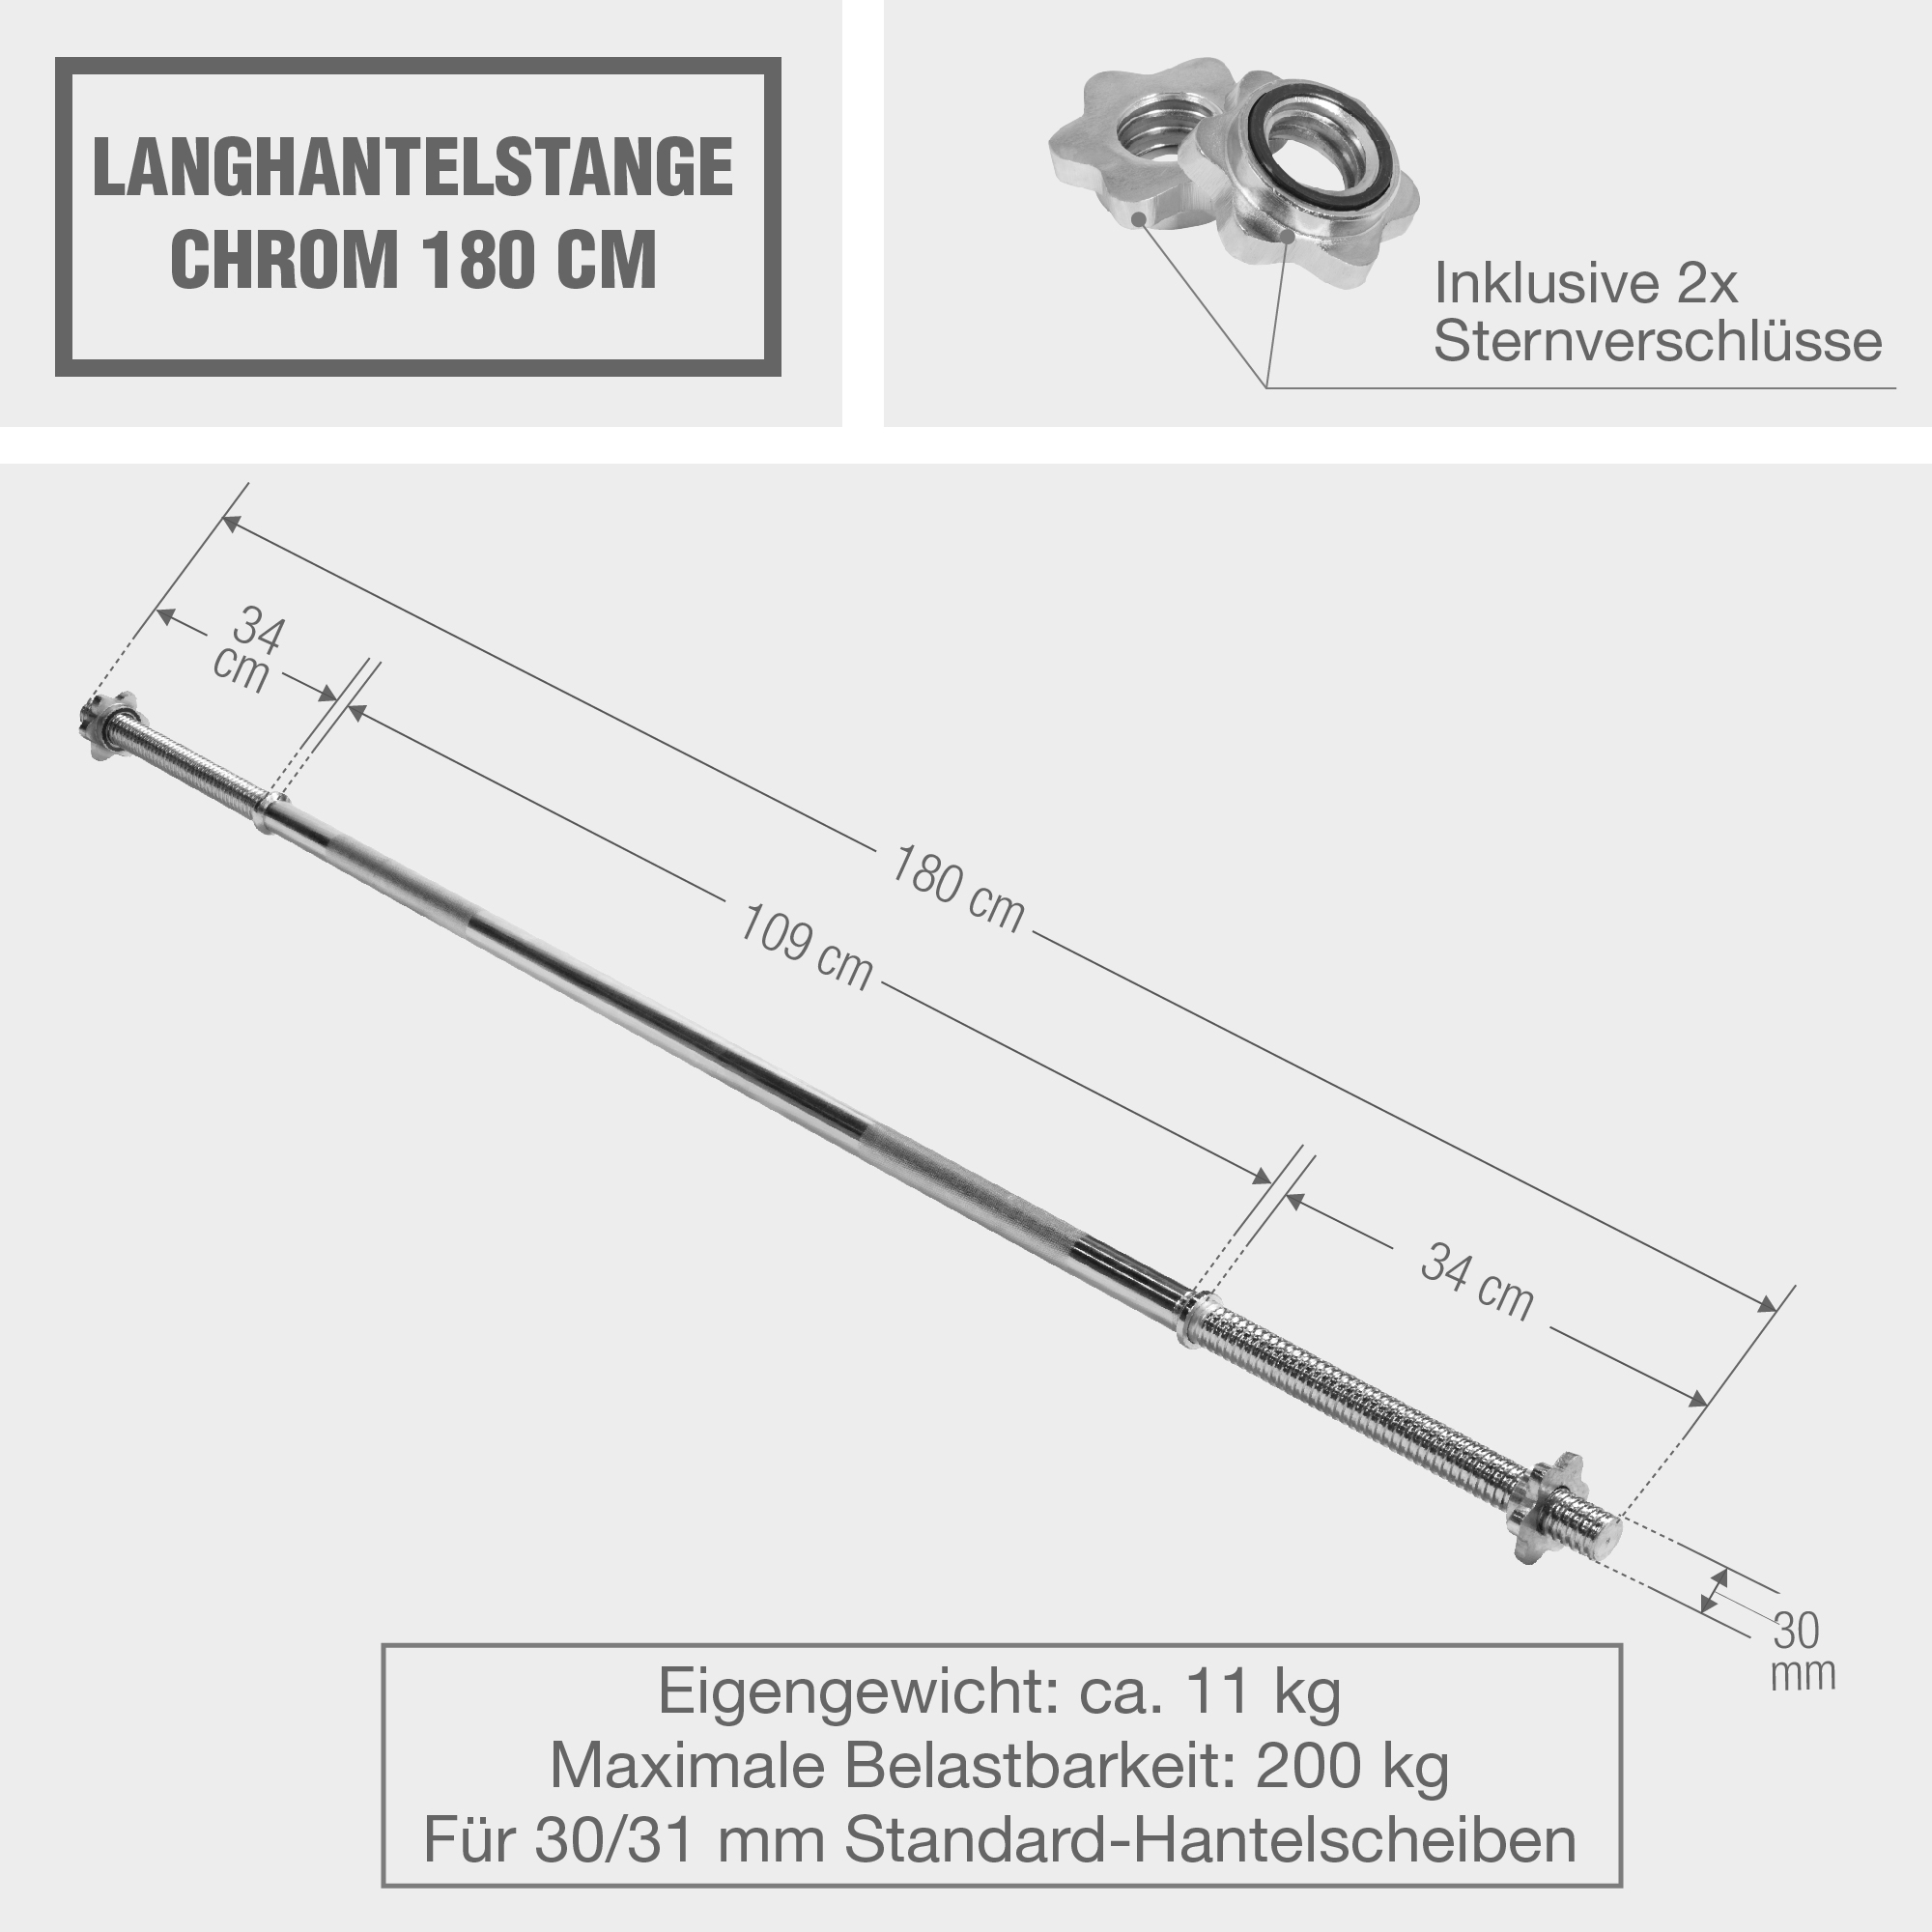 Langhantelstange Chrom 180 cm mit ✓ Sternverschluss